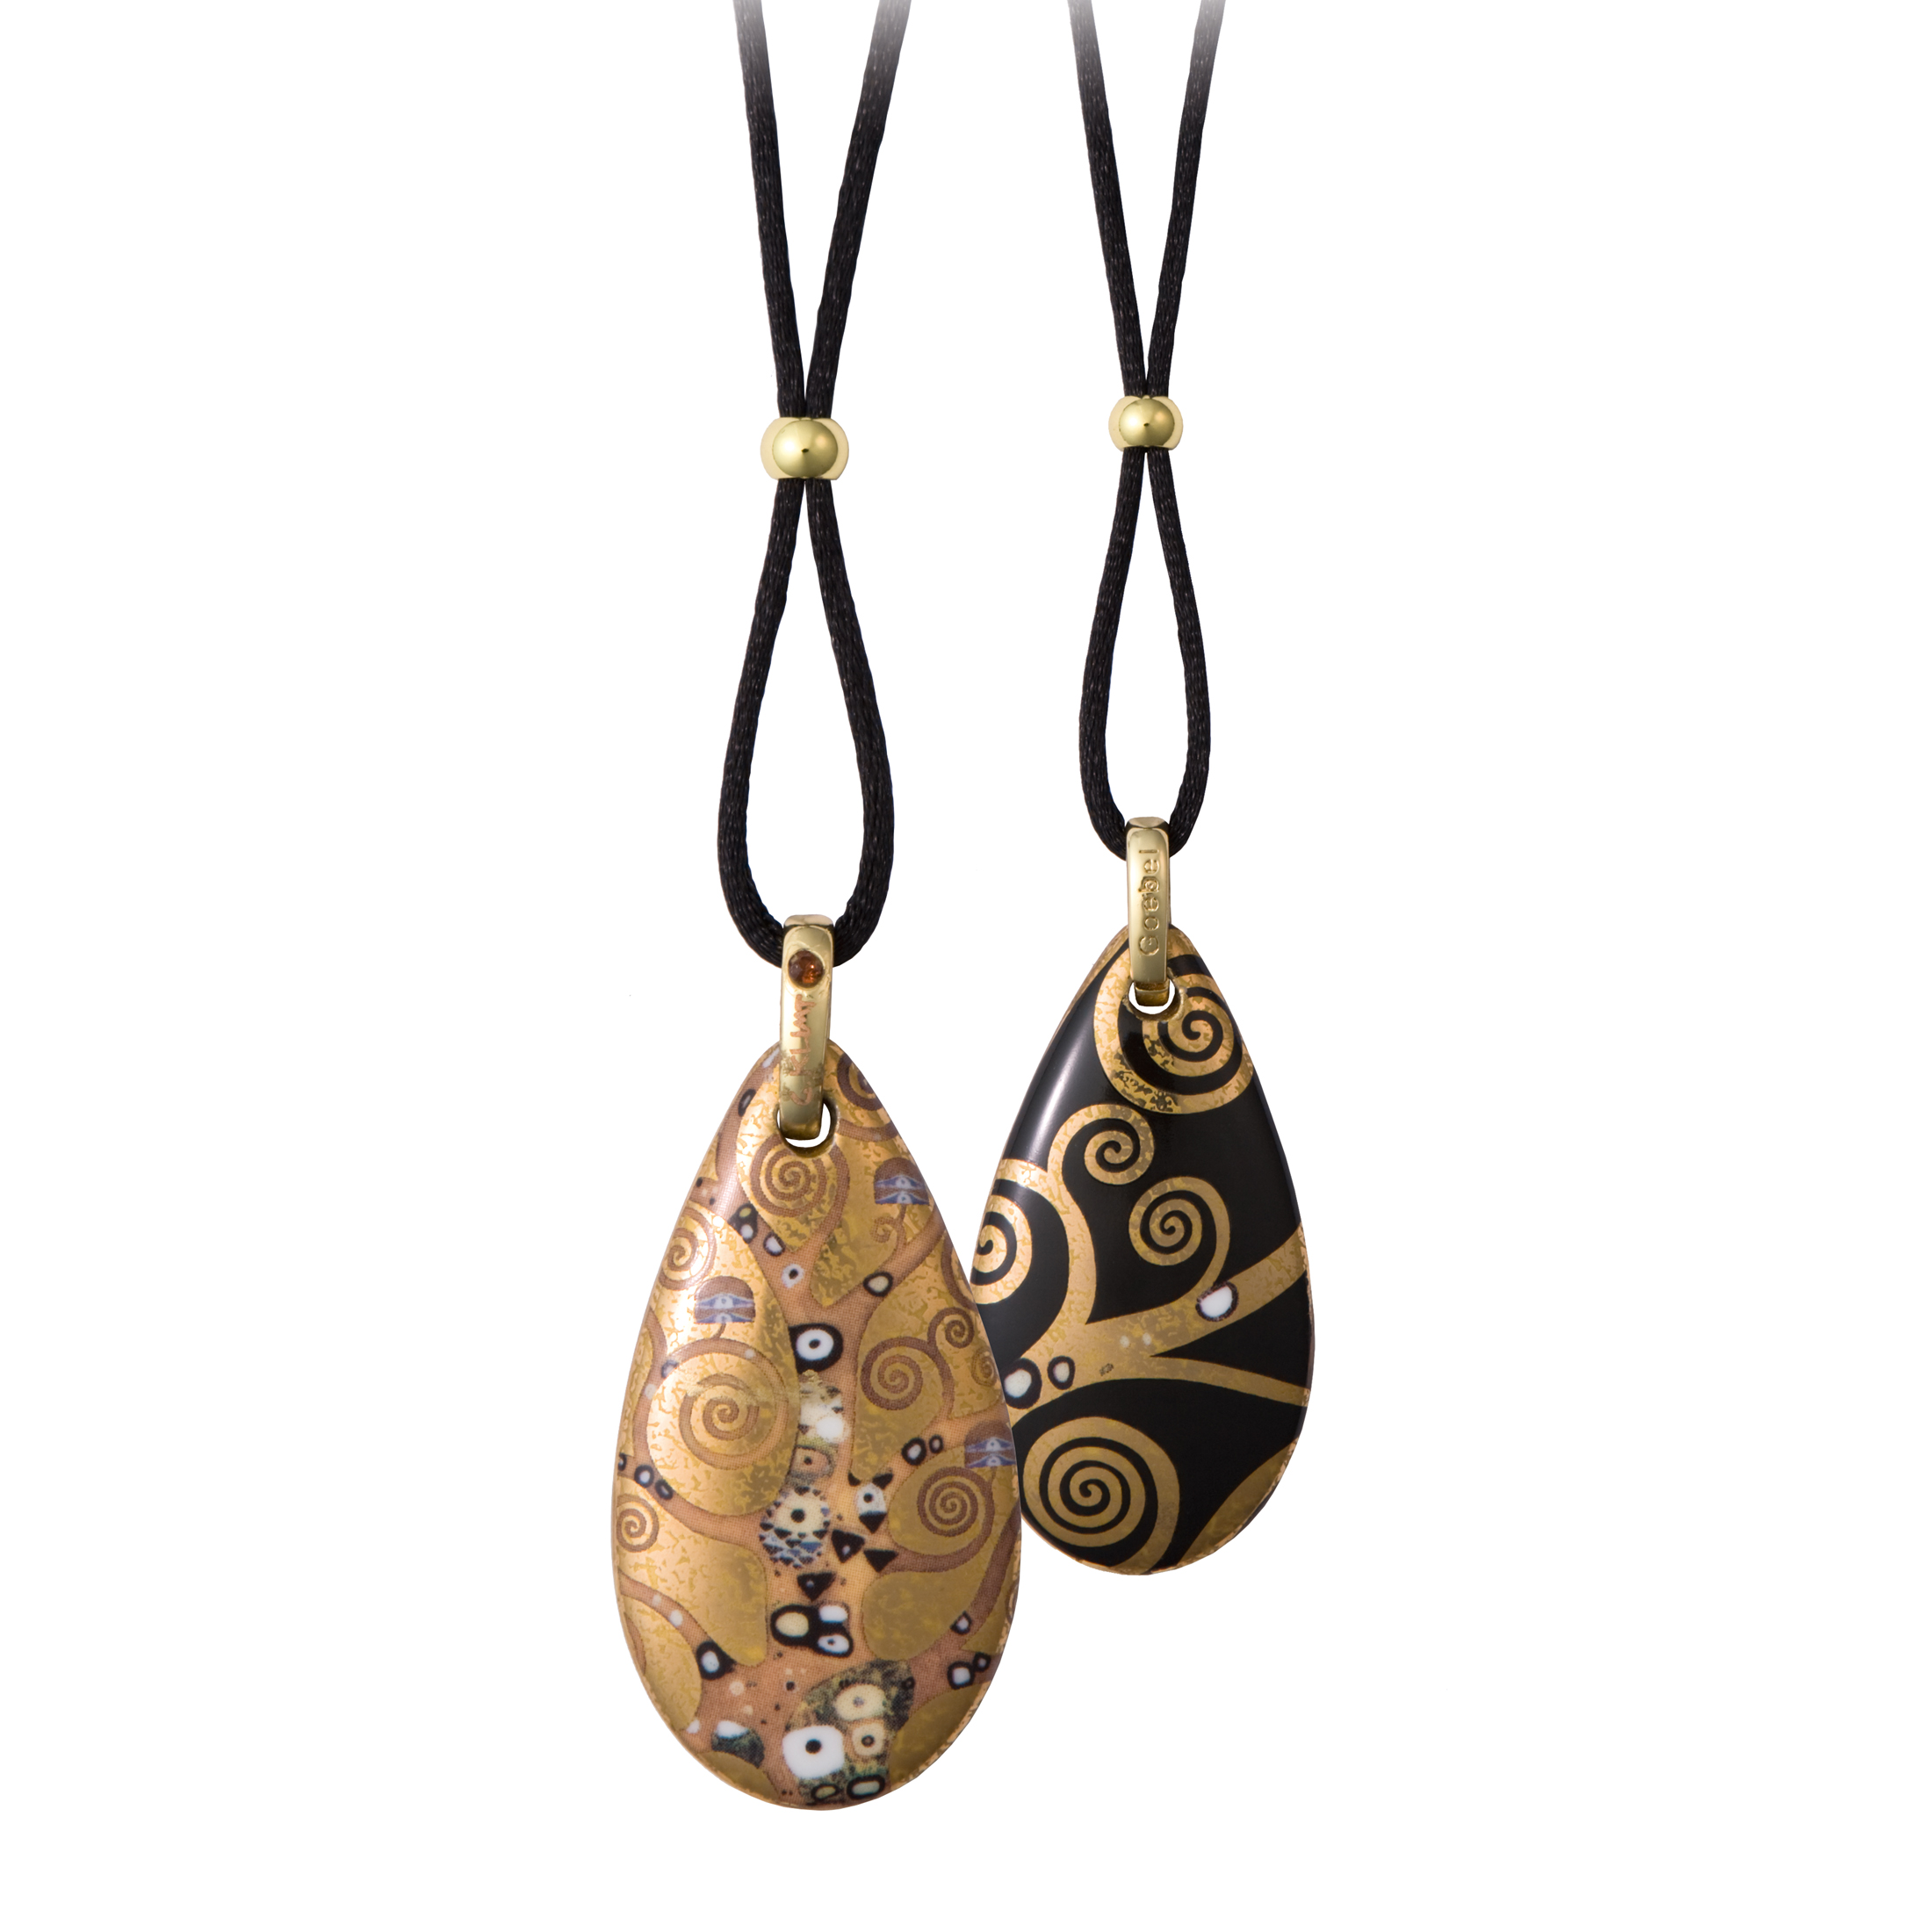 Der Lebensbaum - Artis Orbis Gustav Klimt - Goebel - Kette mit Porzellan Tropfen Amulett